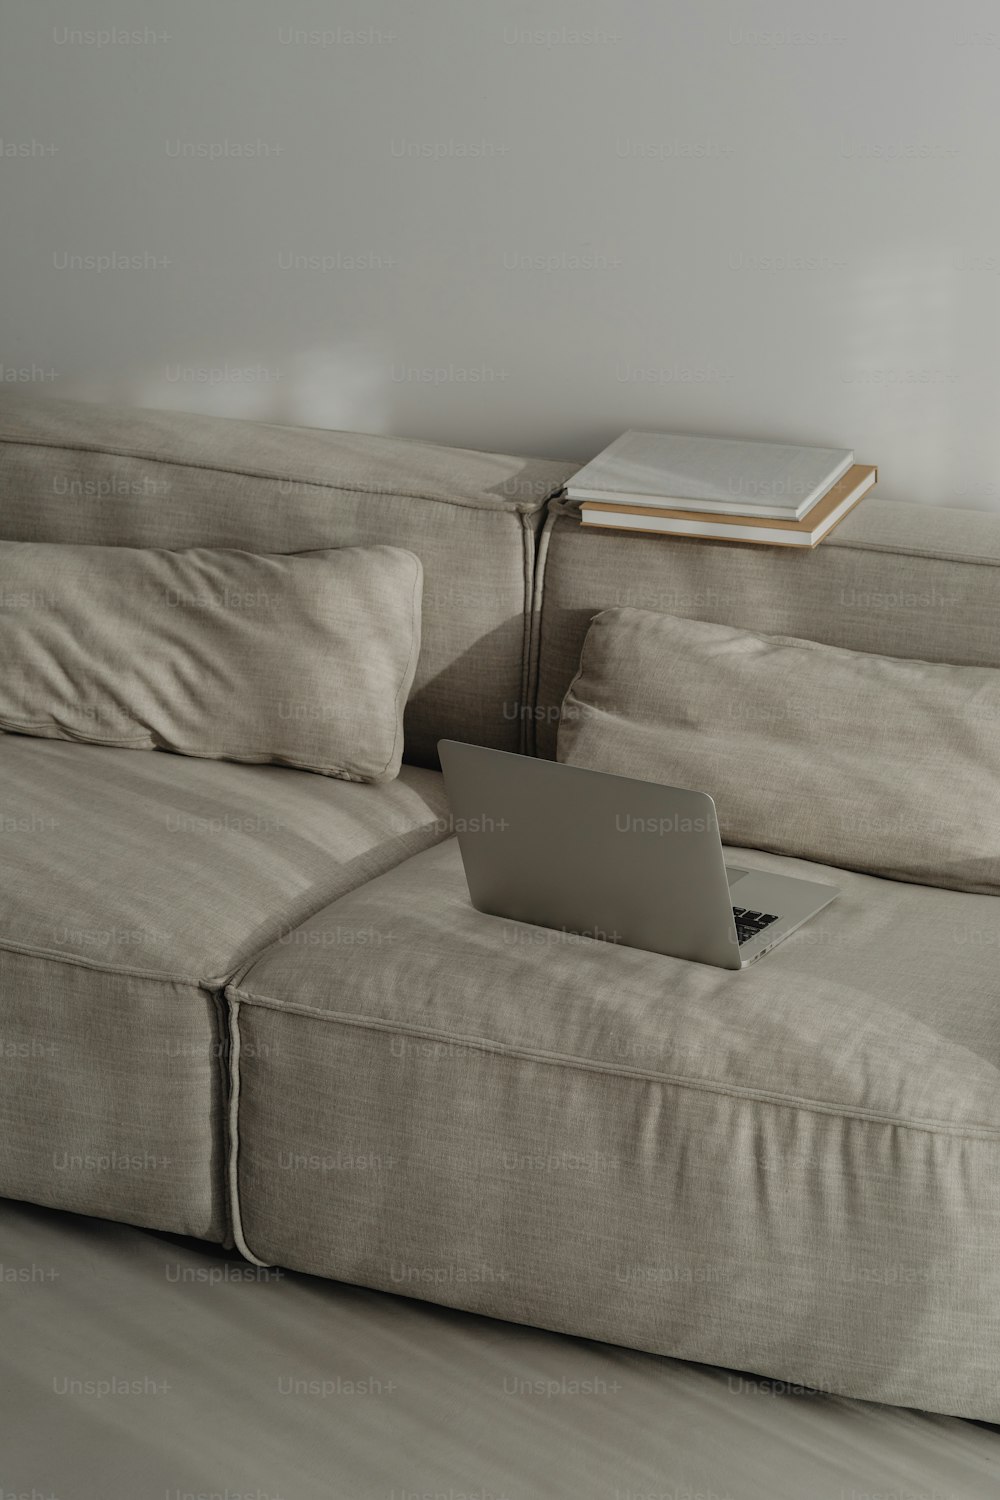 una computadora portátil sentada encima de un sofá